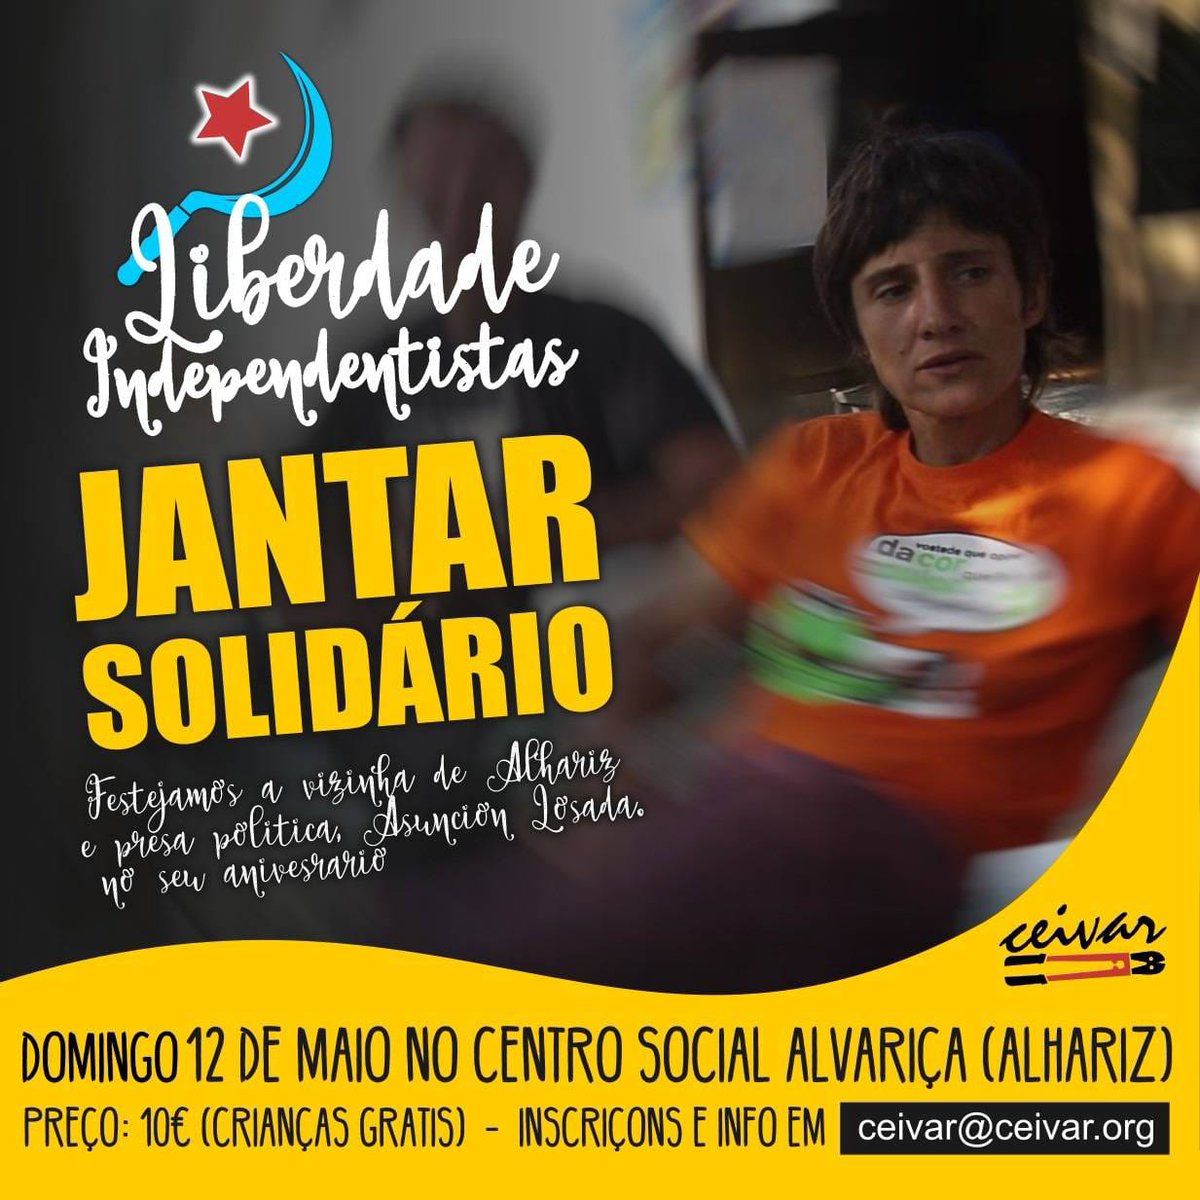 Este domingo, jantar solidário no @csalvariza organizado por @Ceivar_OPAR , a nom perder! Liberdade Independentistas!